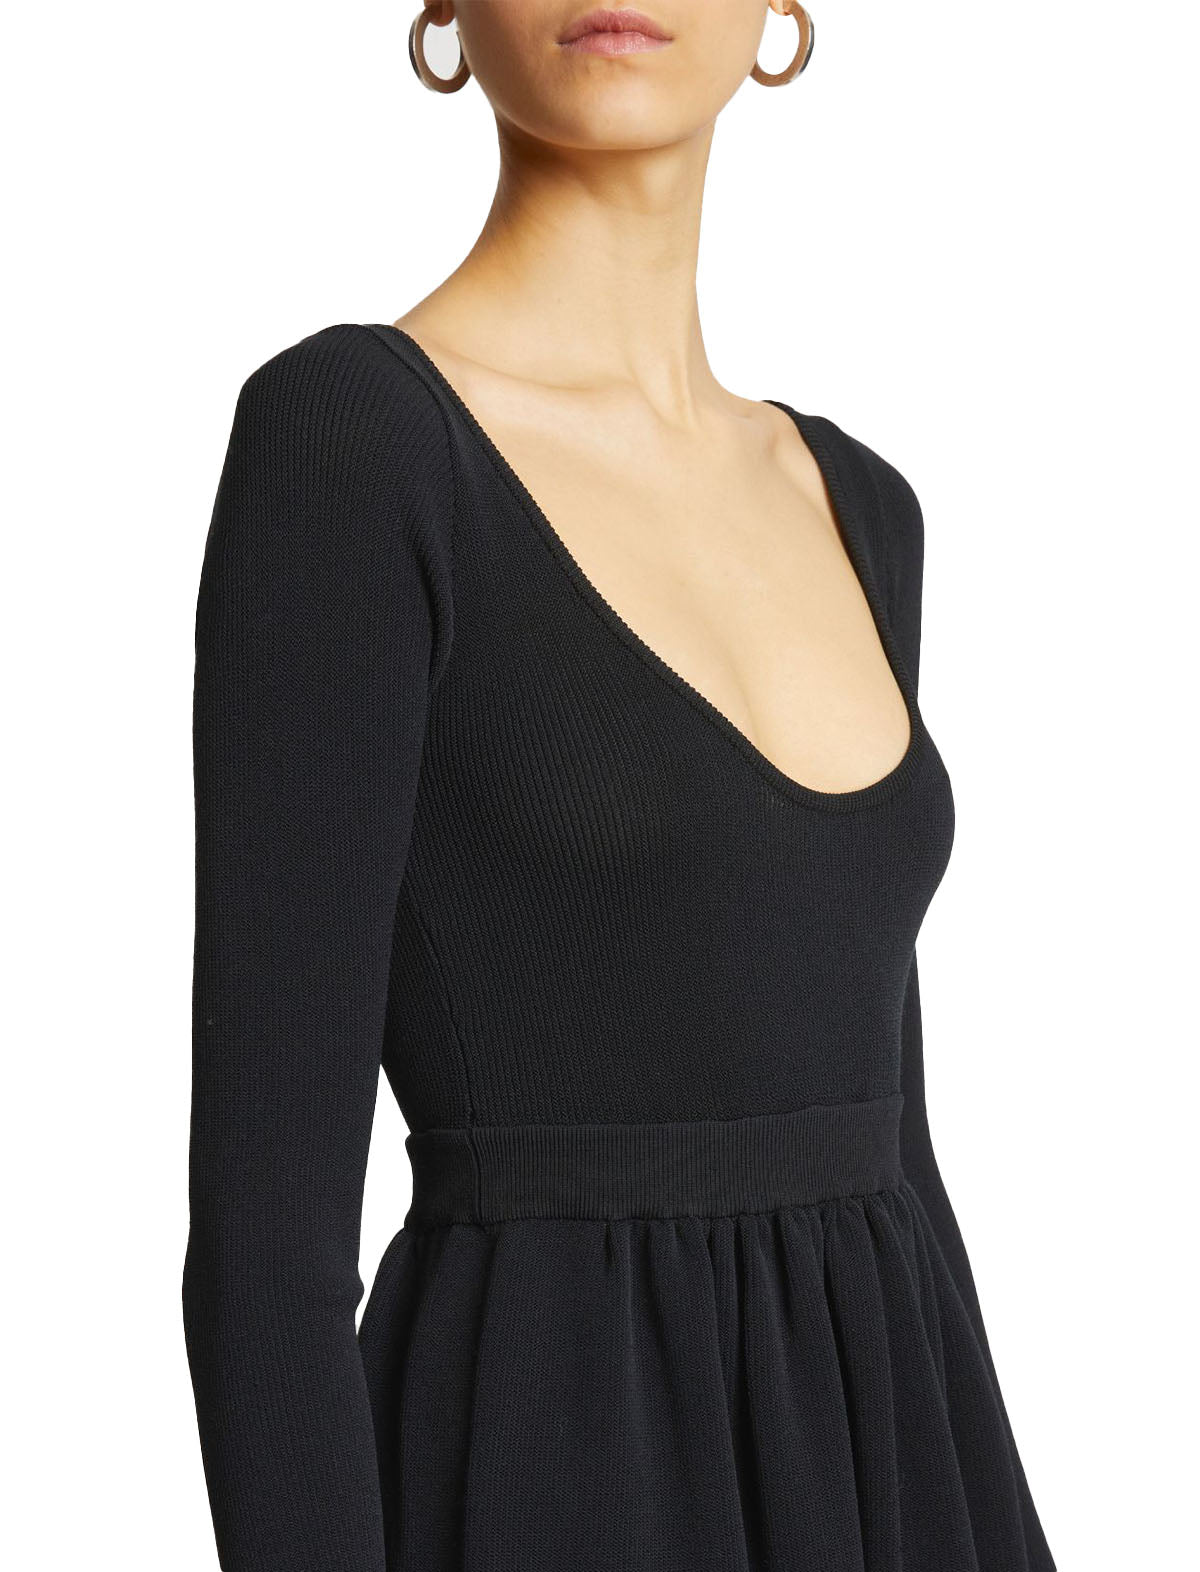 PROENZA SCHOULER WHITE LABEL Long Sleeve Knit Dress In Black